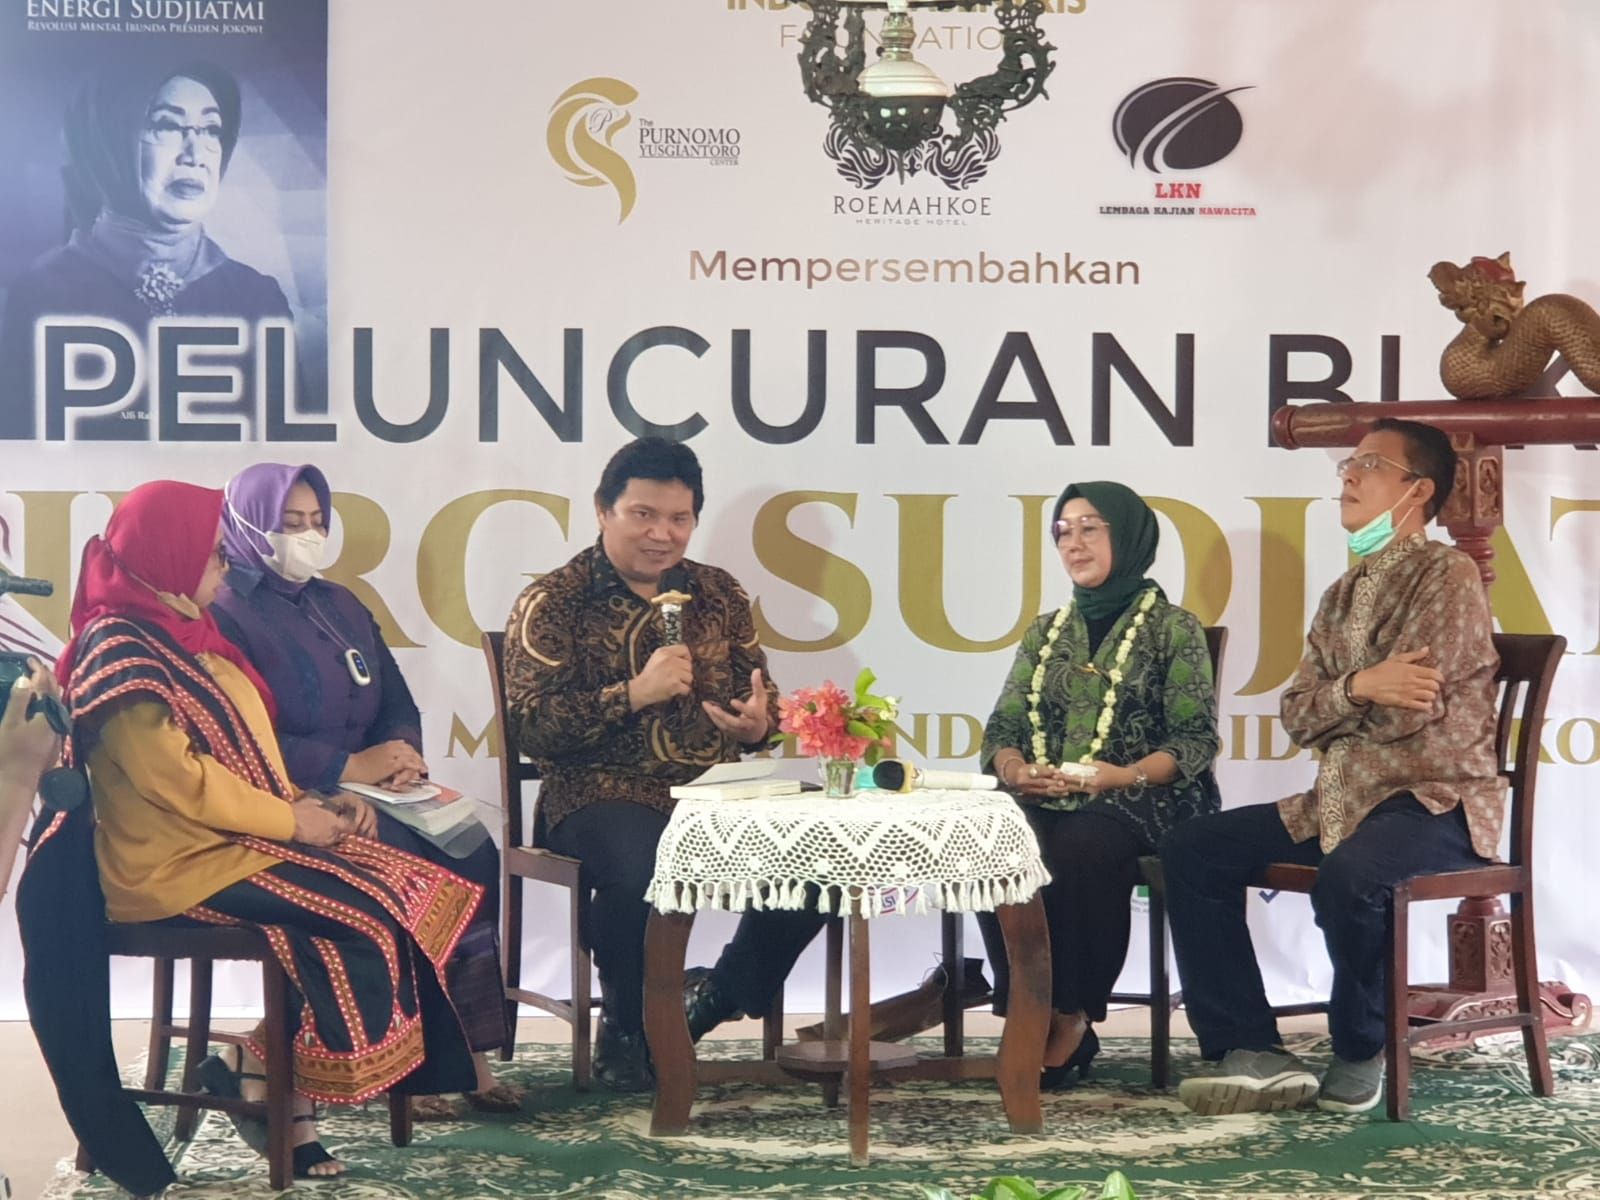 Tepat di Hari Ibu Yayasan Indonesia Sentris Fondation melakukan Peluncuran Buku Energi Sudjiatmi  bersama ke tida Putri Ibu Sudjiatmi di Solo, Rabu, 22 Desember 2021